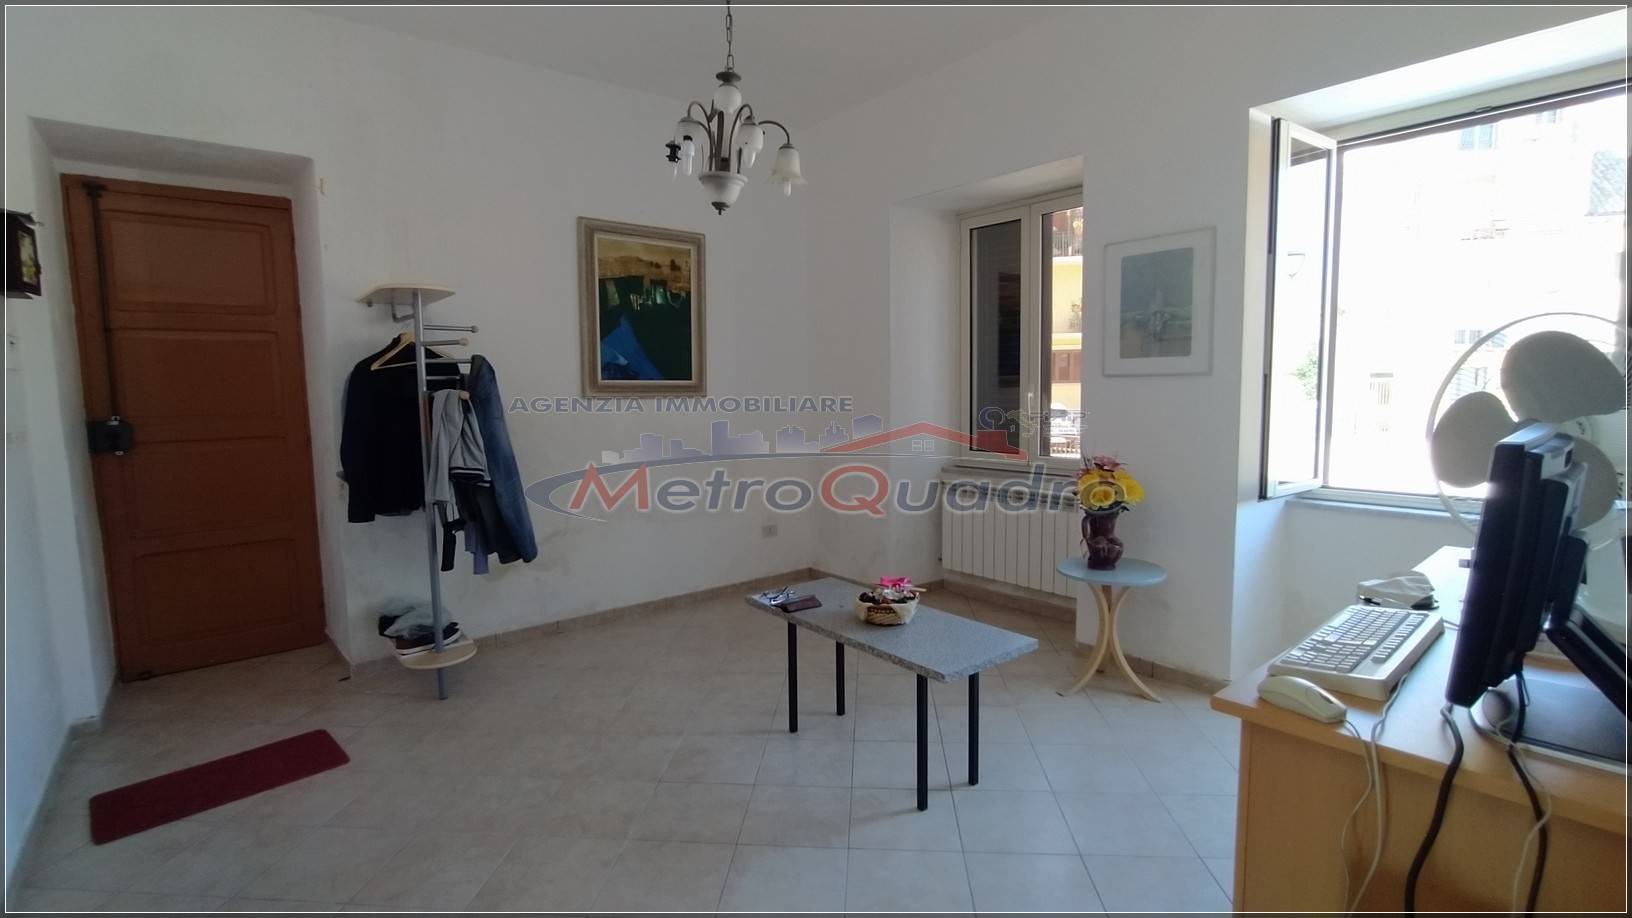 Appartamento in vendita a Canicattì, 3 locali, zona Località: C 5-6 ZONA PONTE DI FERRO E STAZIONE, prezzo € 56.000 | CambioCasa.it